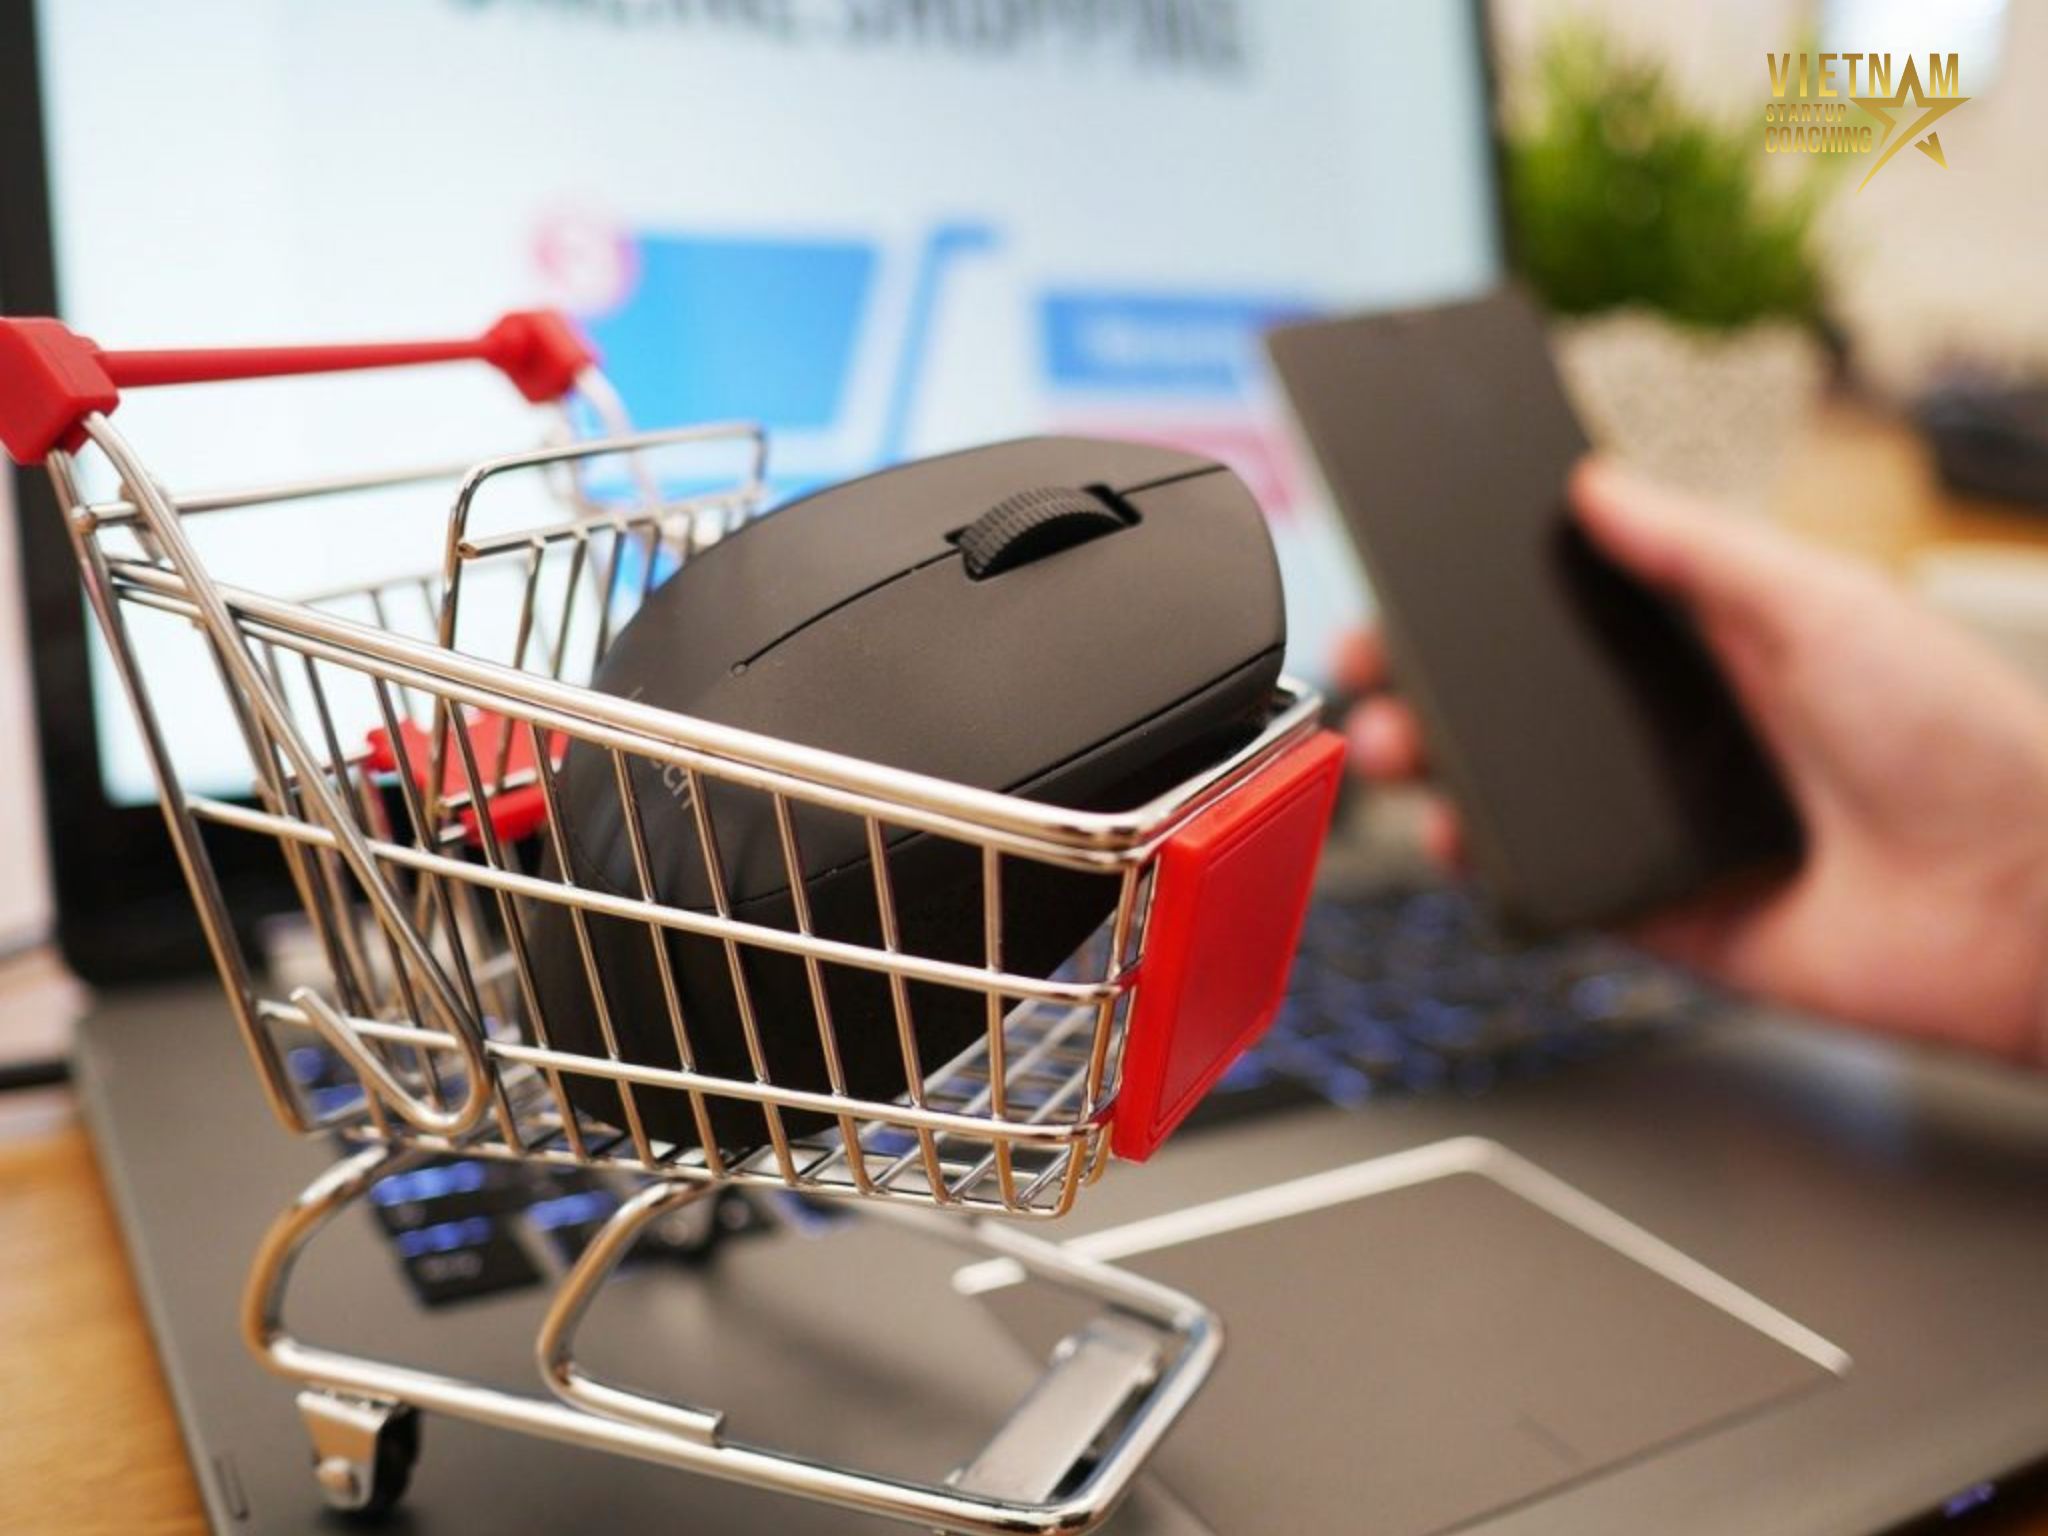 Ở Việt Nam, có nhiều trang web thương mại điện tử phổ biến mà người tiêu dùng thường sử dụng để mua sắm và đặt hàng trực tuyến